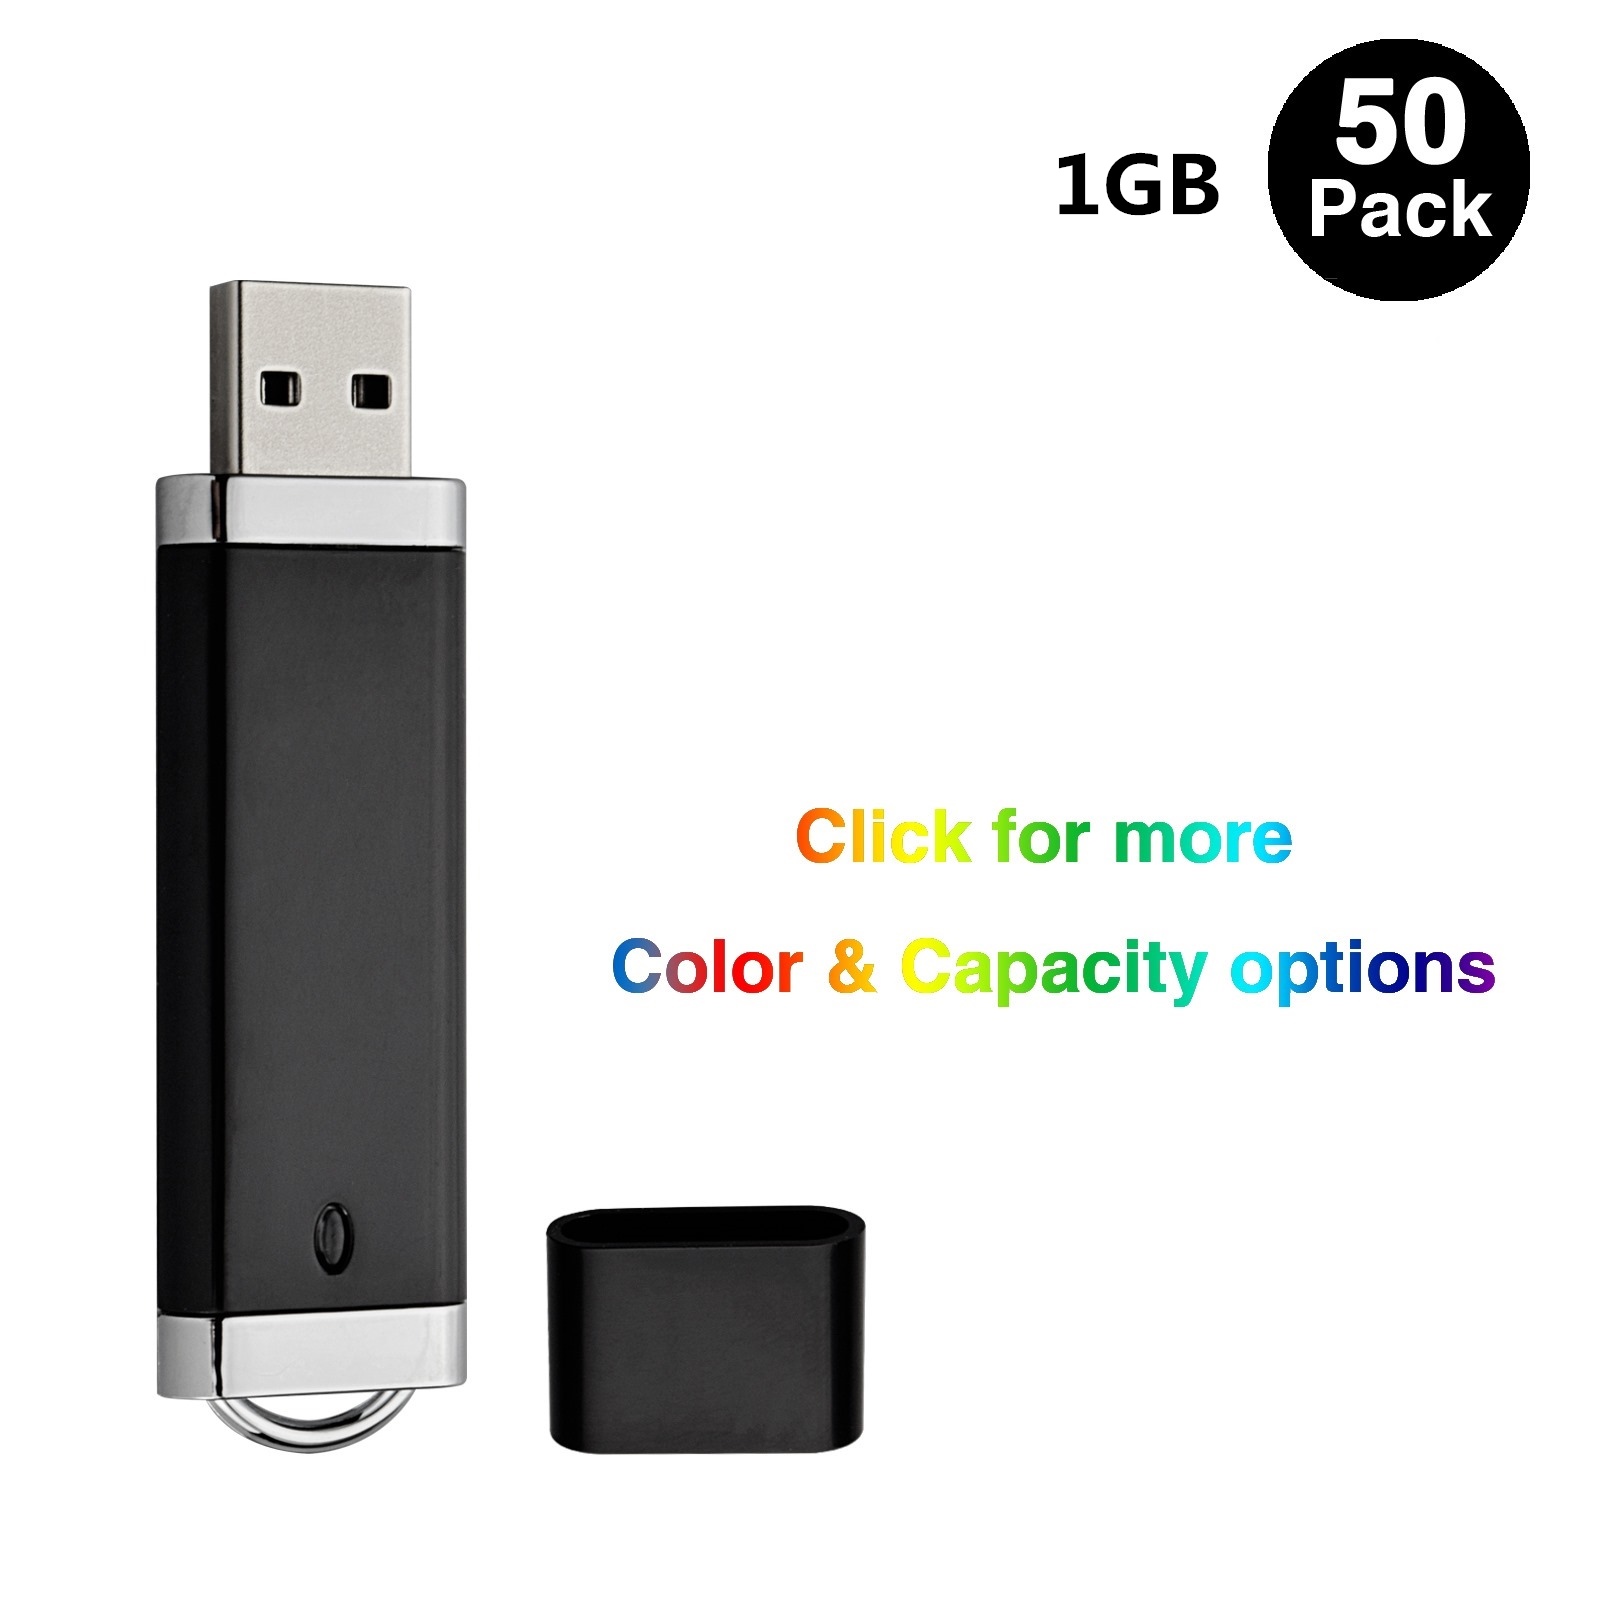 In blocco 50pcs 1 GB USB 2.0 Flash Drive più leggero Design Flash Pen Drive Memory Stick Memory Stick per l'indicatore LED per laptop per computer Multicolori